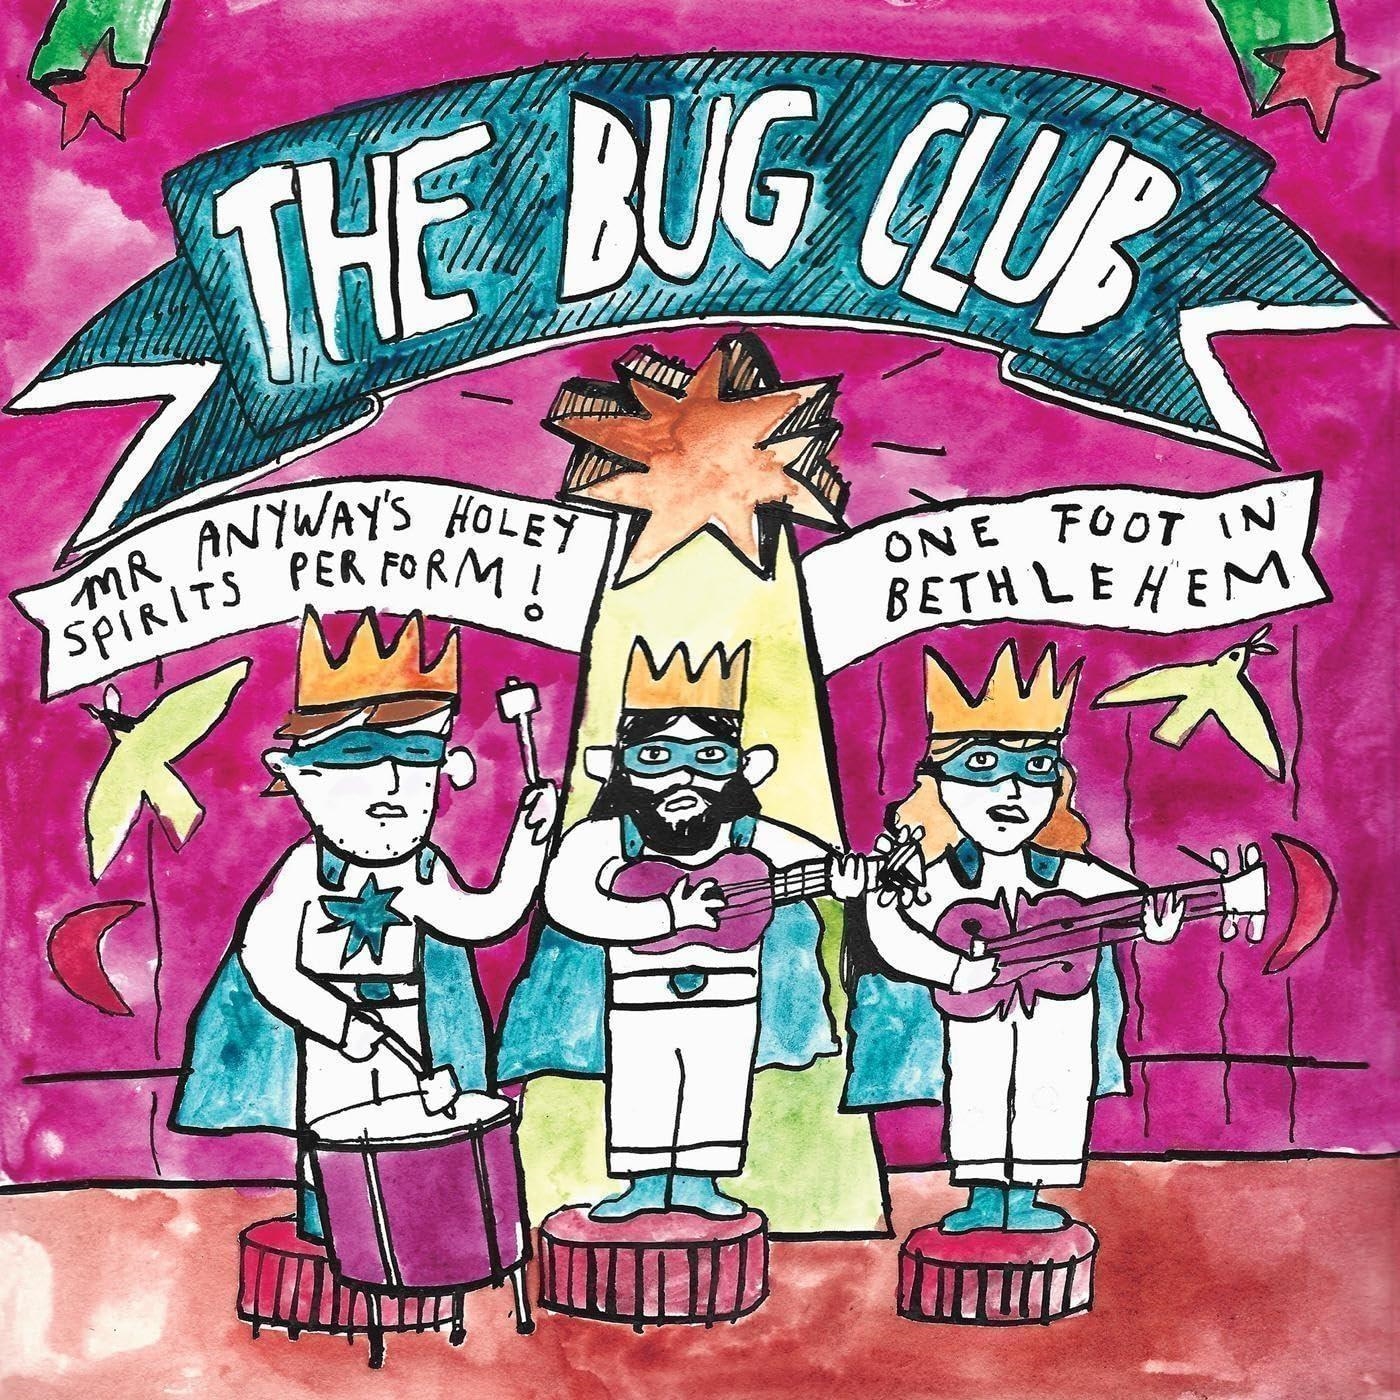 Vinile Bug Club (The) - Mr Anyway's Holey Spirits Perform! One Foot In Bethlehem NUOVO SIGILLATO, EDIZIONE DEL 25/08/2023 SUBITO DISPONIBILE